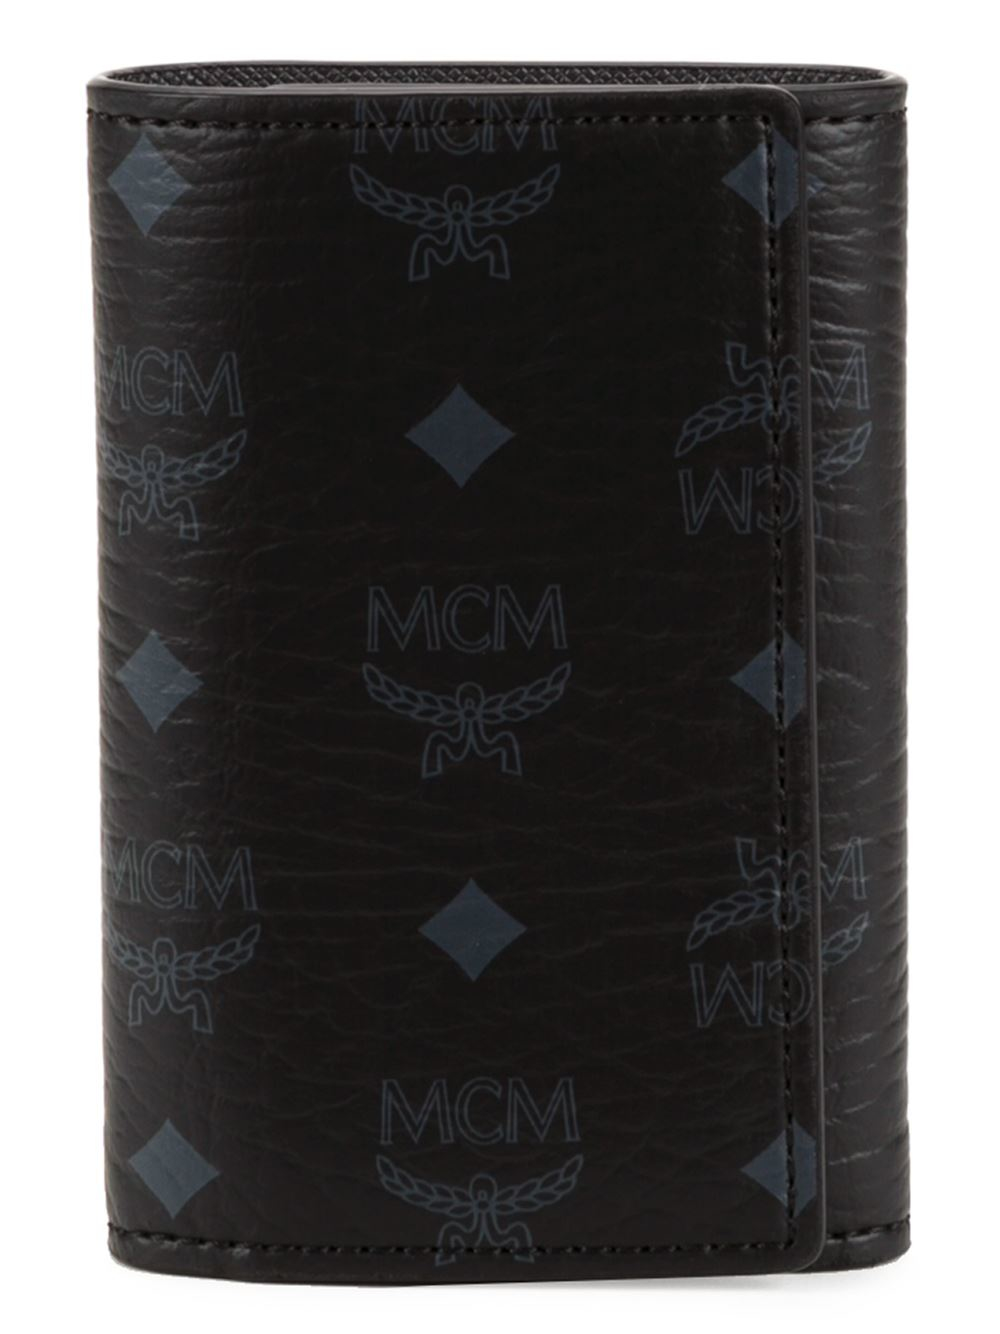 Vintage MCM Munchen Black White Leather Key Holder Wallet A5819 Vintage ...